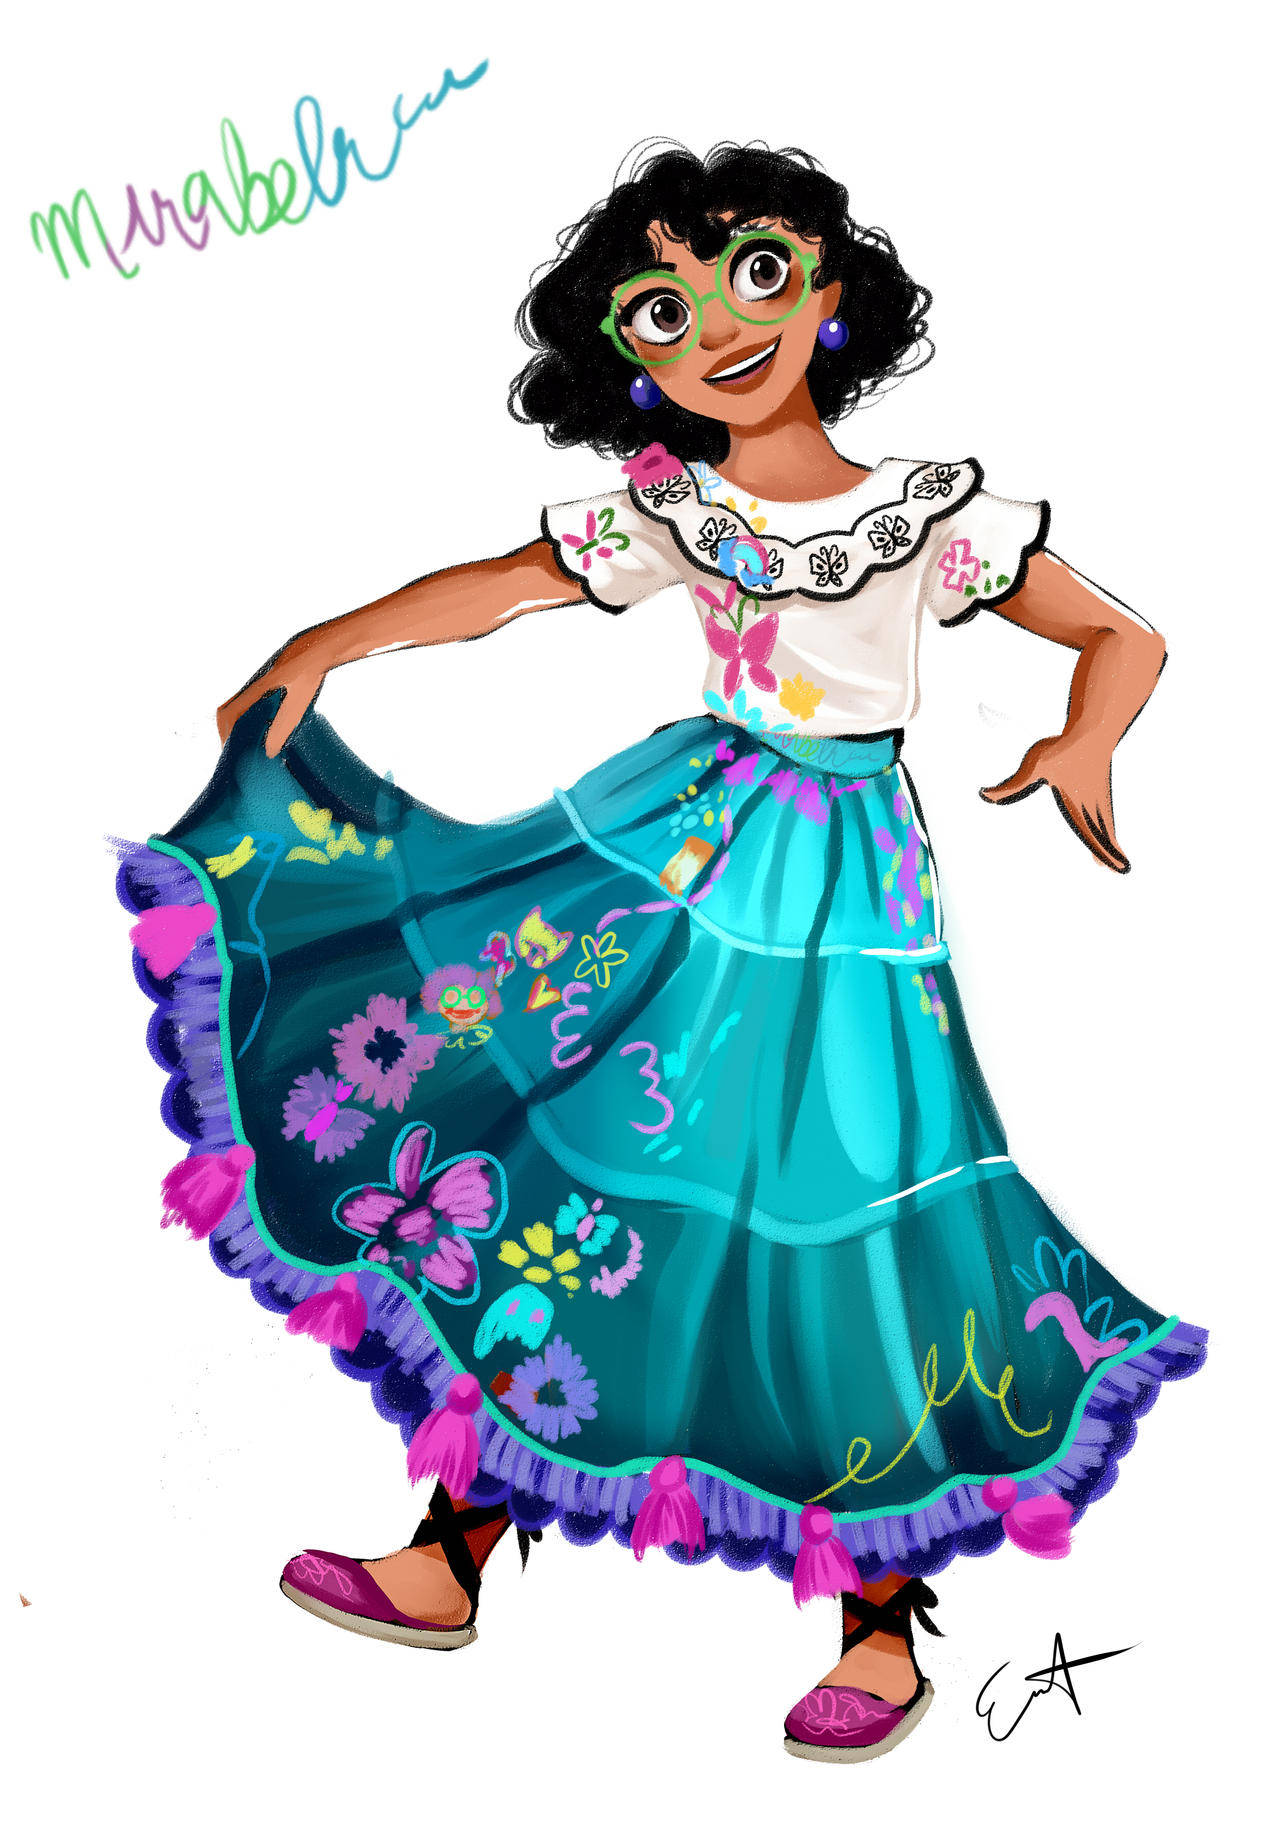 Encanto's Mirabel Madrigal in her Vibrant Skirt Wallpaper